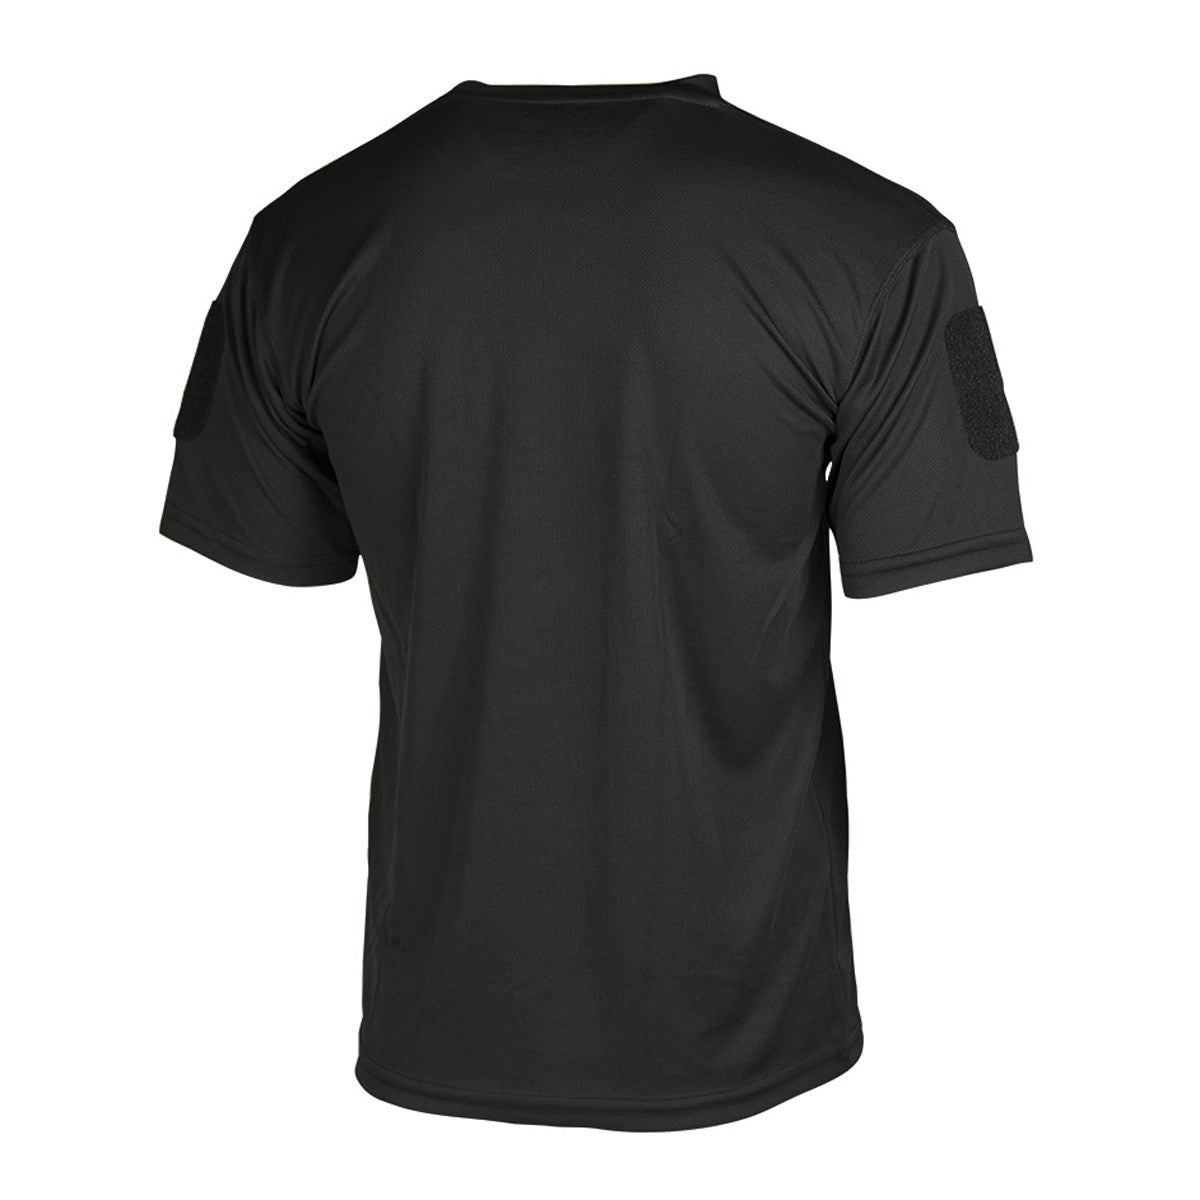 Miltec Tactical QUICK DRY T-shirt Black